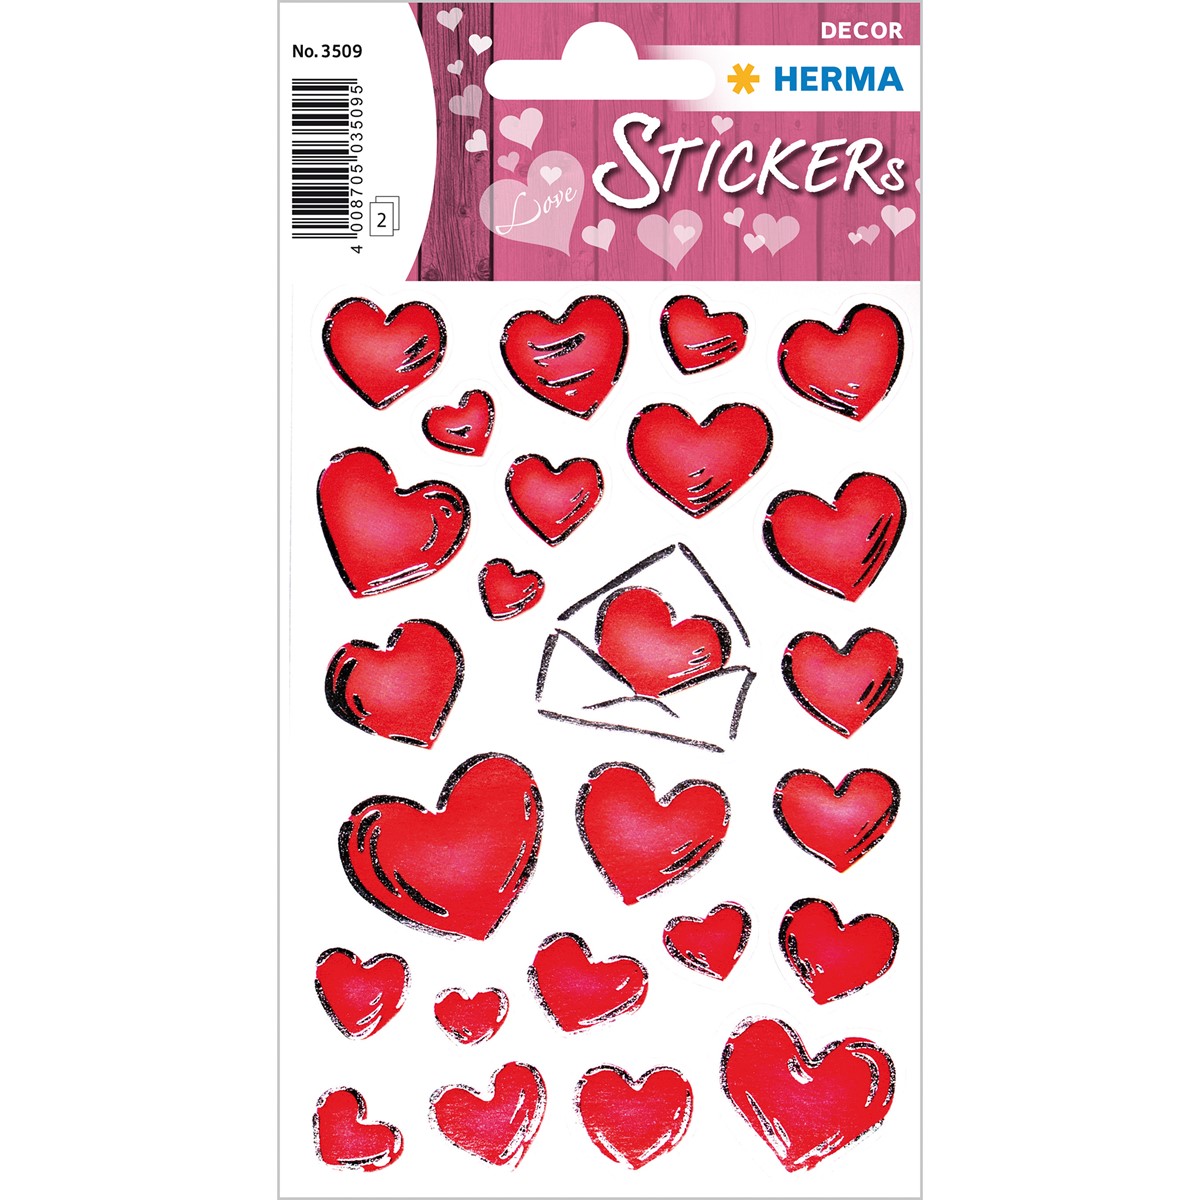 Herma - Deco Sticker - konturgestanzt - selbstklebend - Herzen mit Silberprägung, 2 Blatt/50 Sticker